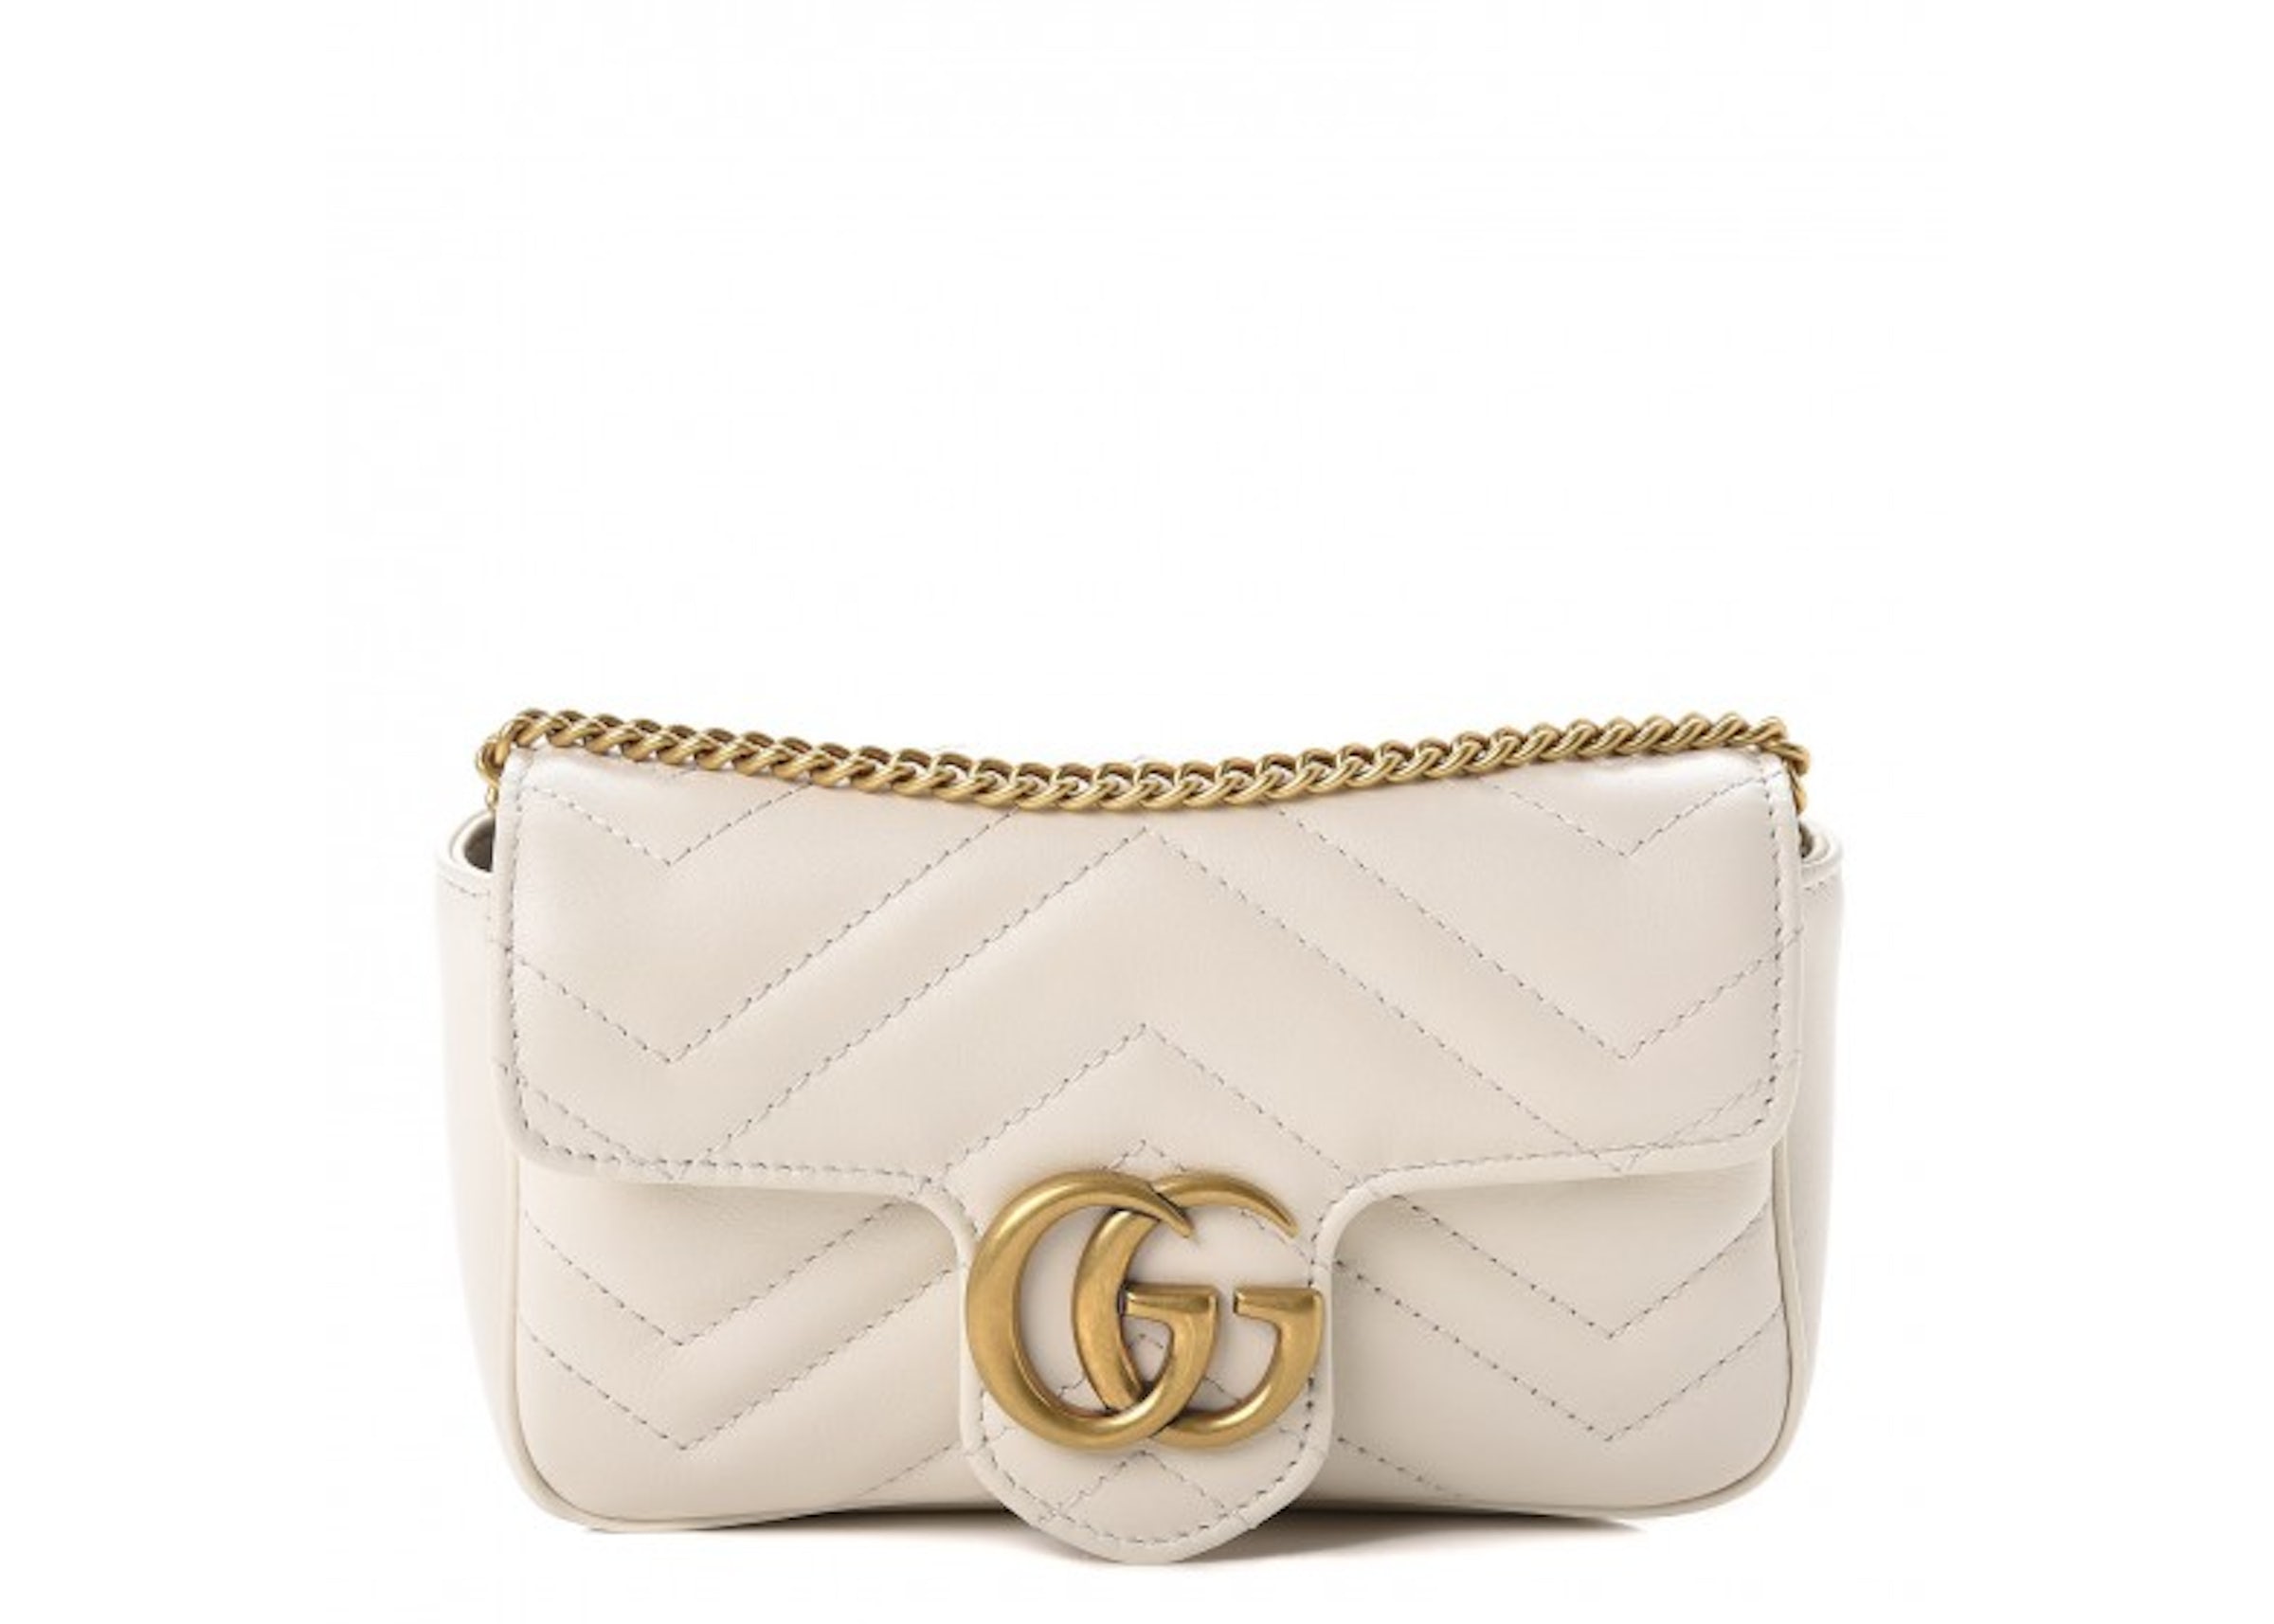 Gucci GG Marmont Super Mini Bag - White